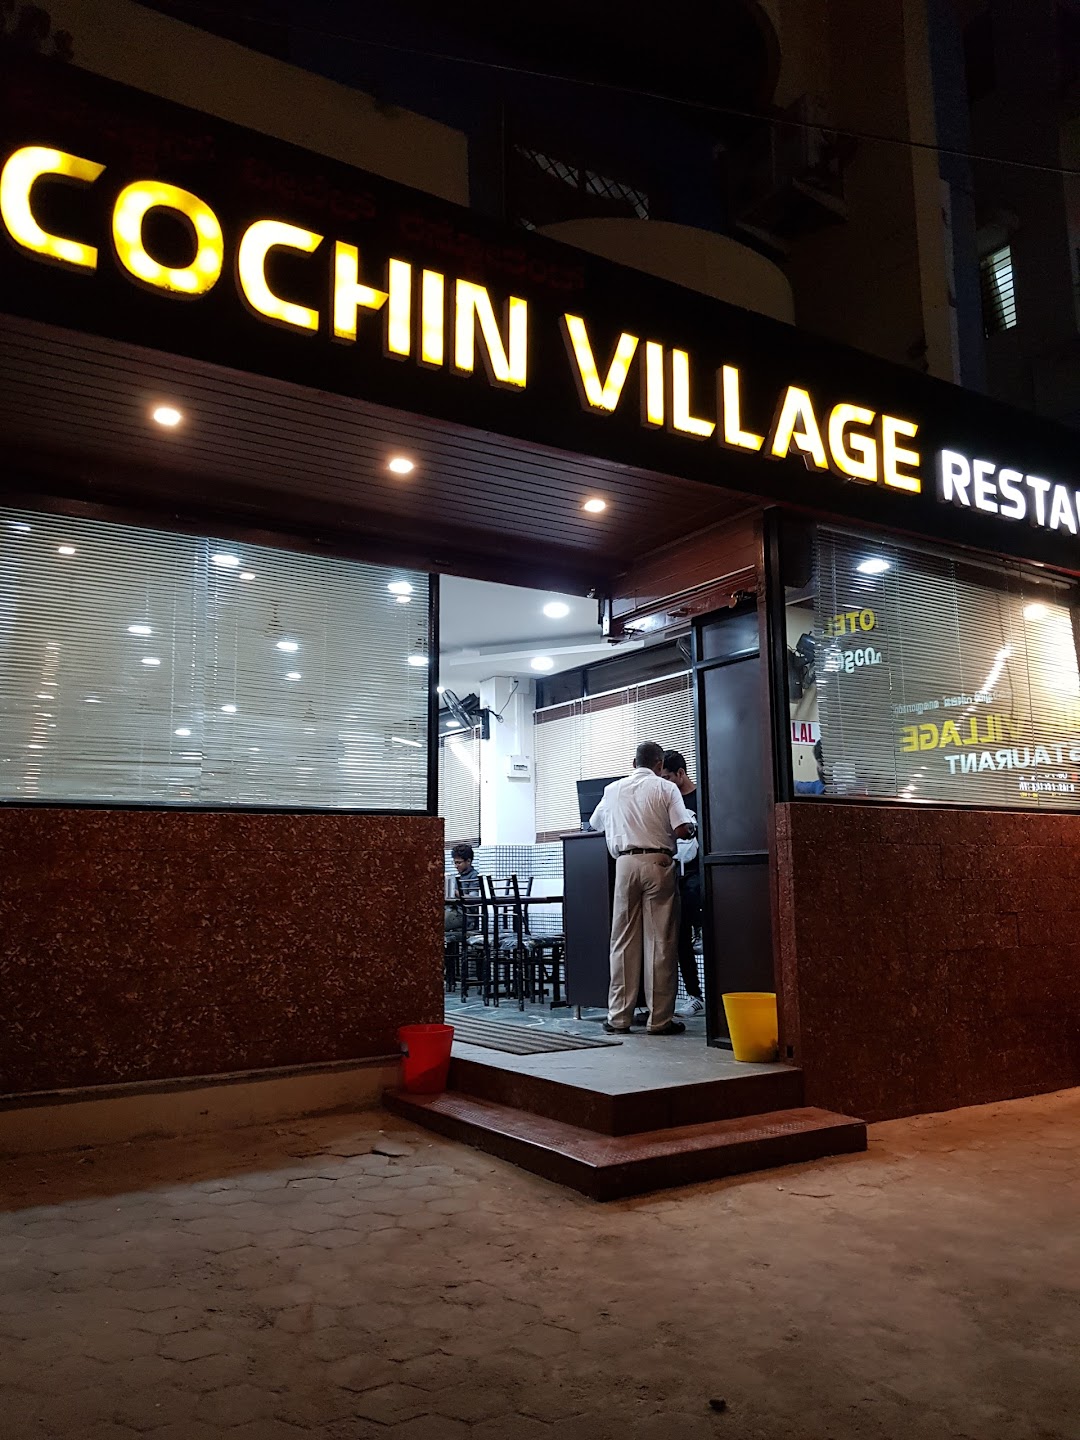 Cochin Village Restaurant